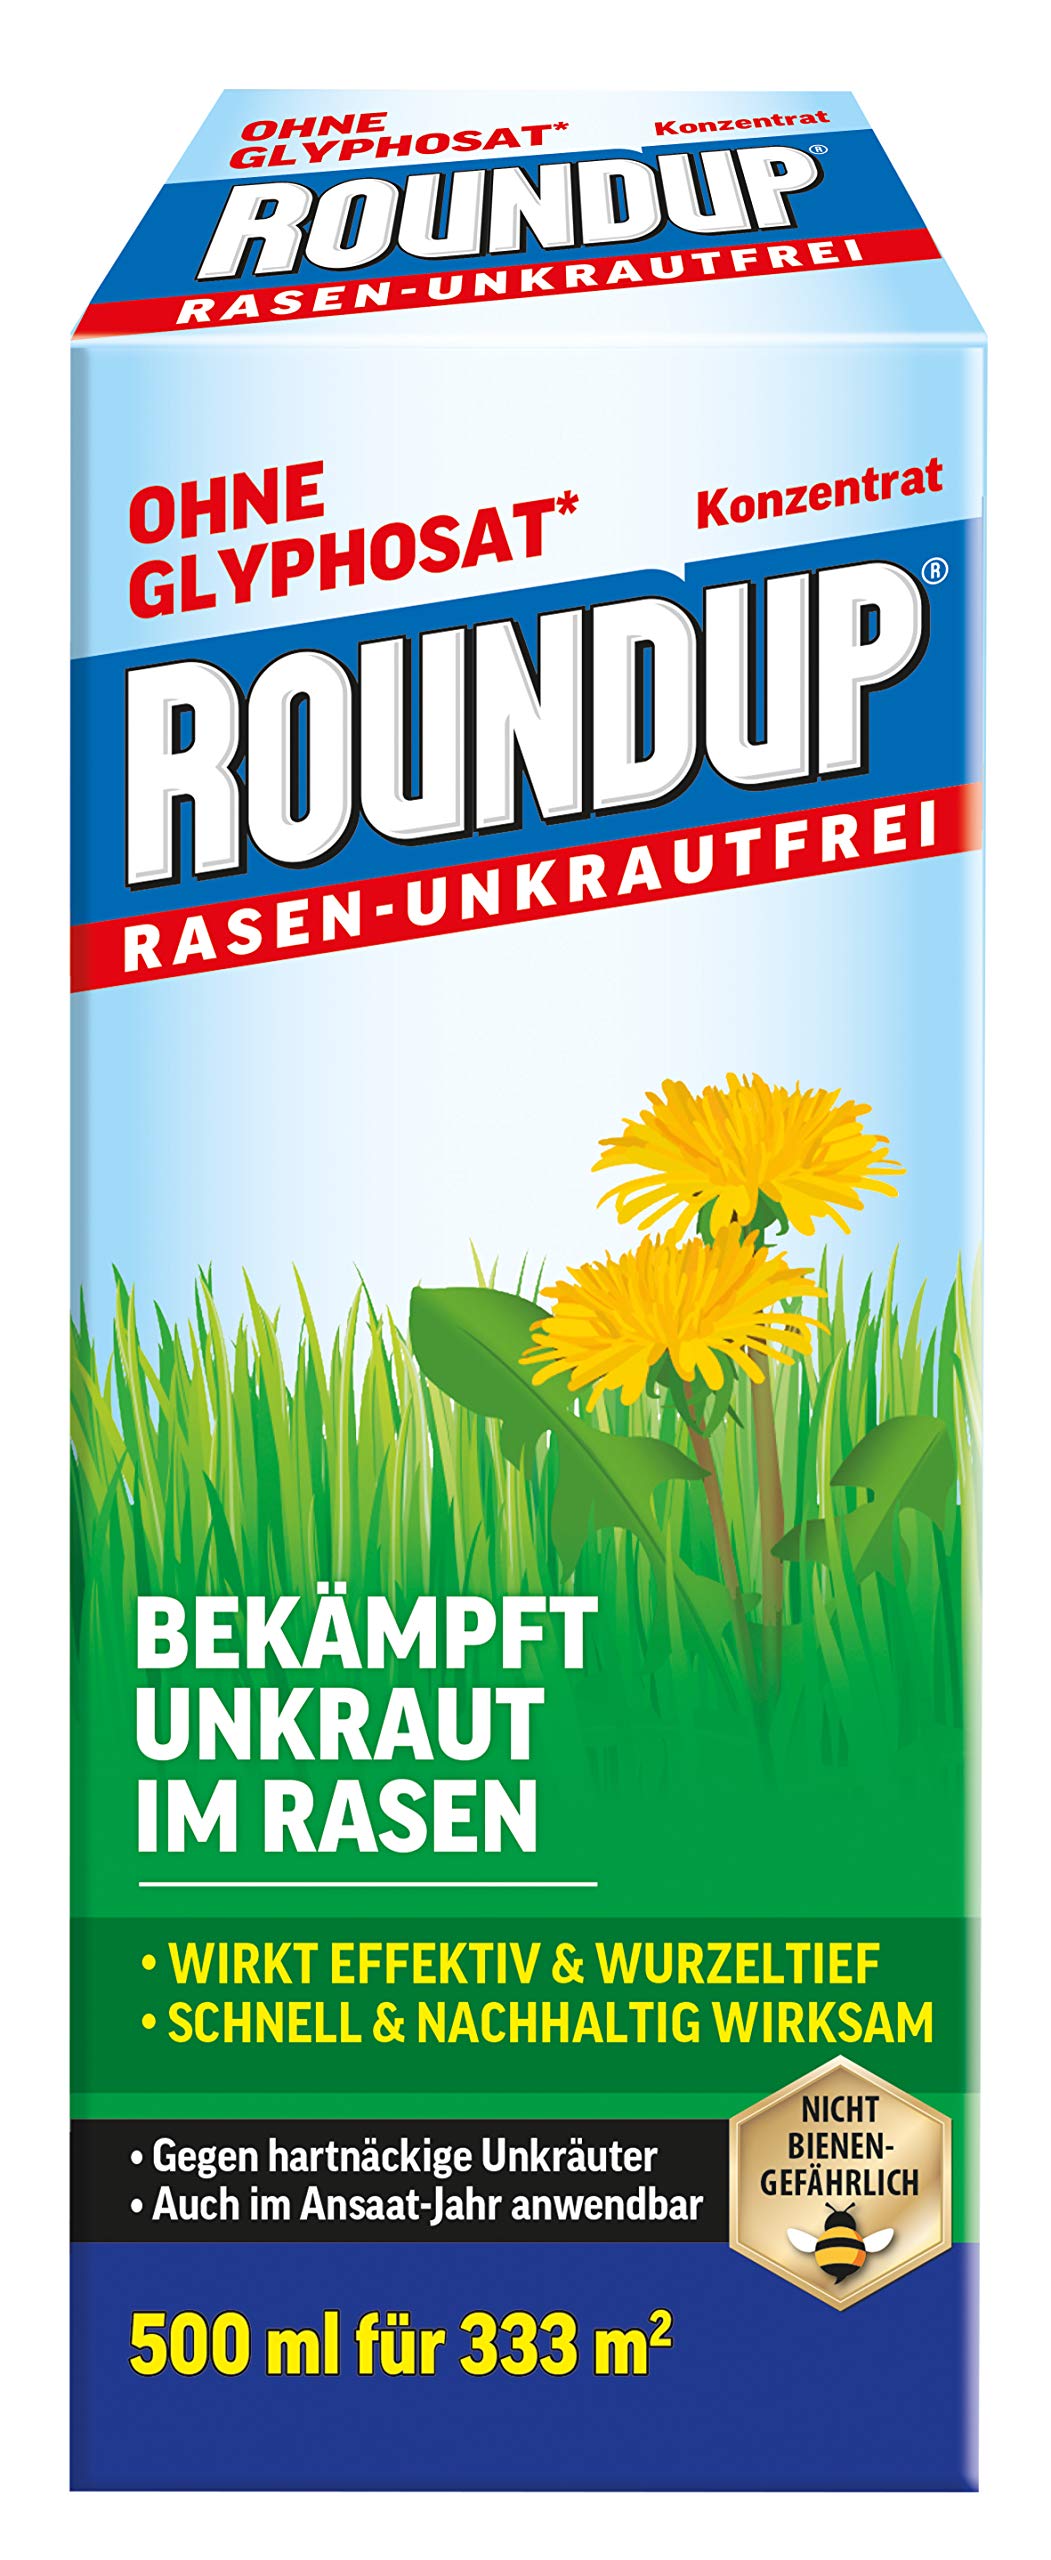 Roundup Rasen-Unkrautfrei Konzentrat, Unkrautvernichter zur Bekämpfung von Unkräutern im Rasen, 500ml für 333m²